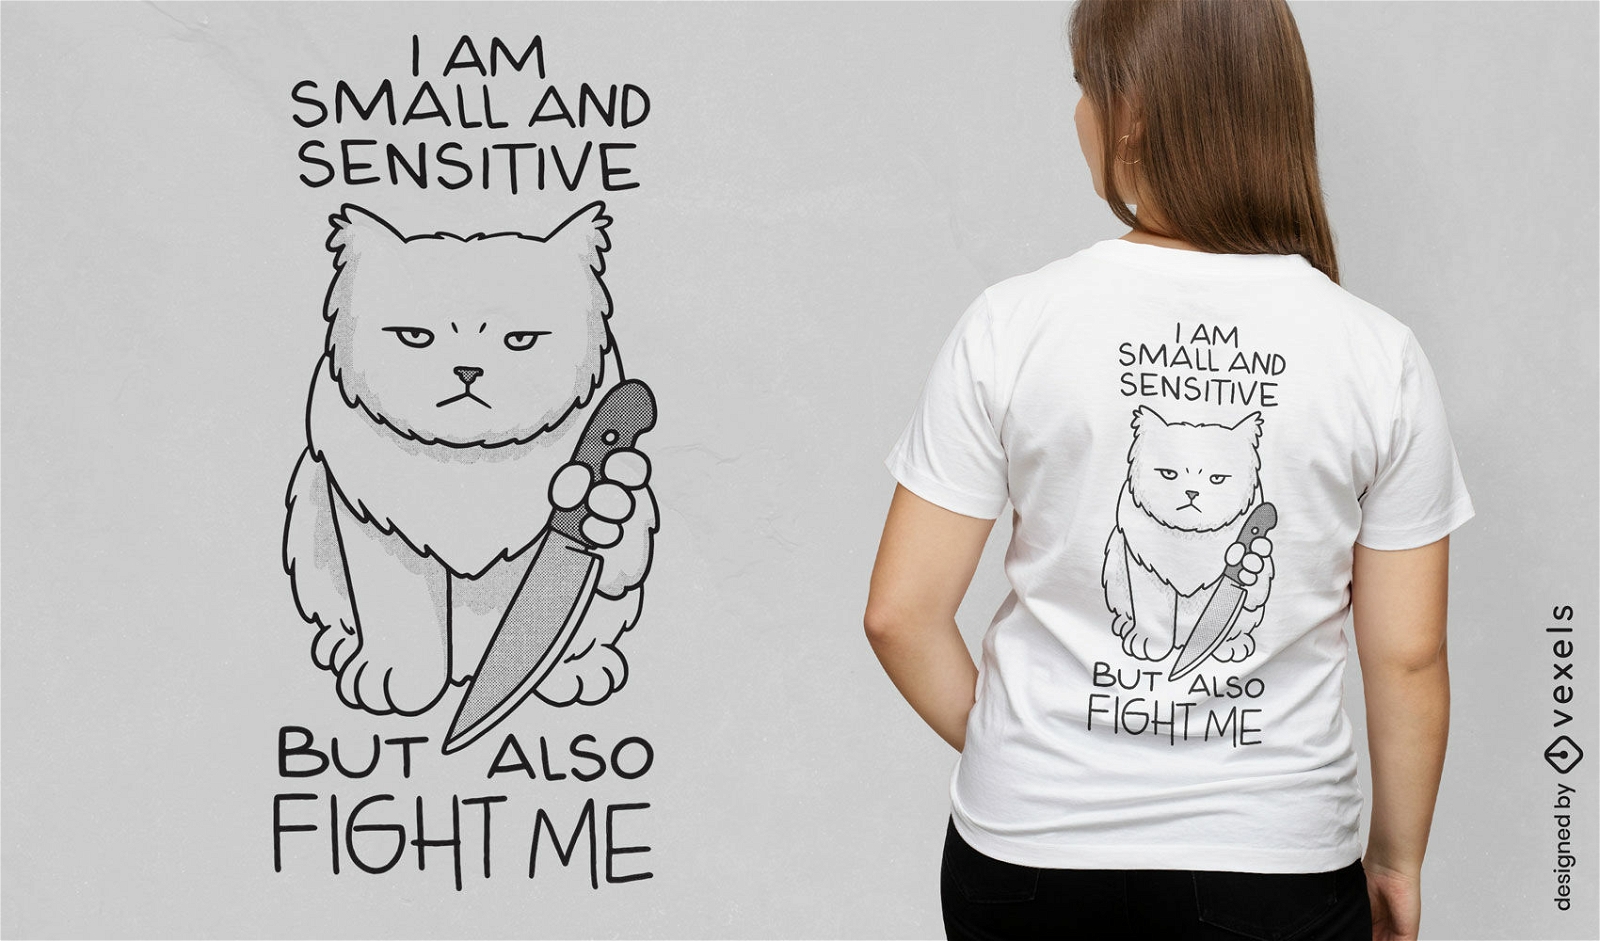 Dise?o divertido de camiseta con cita de gato gru??n